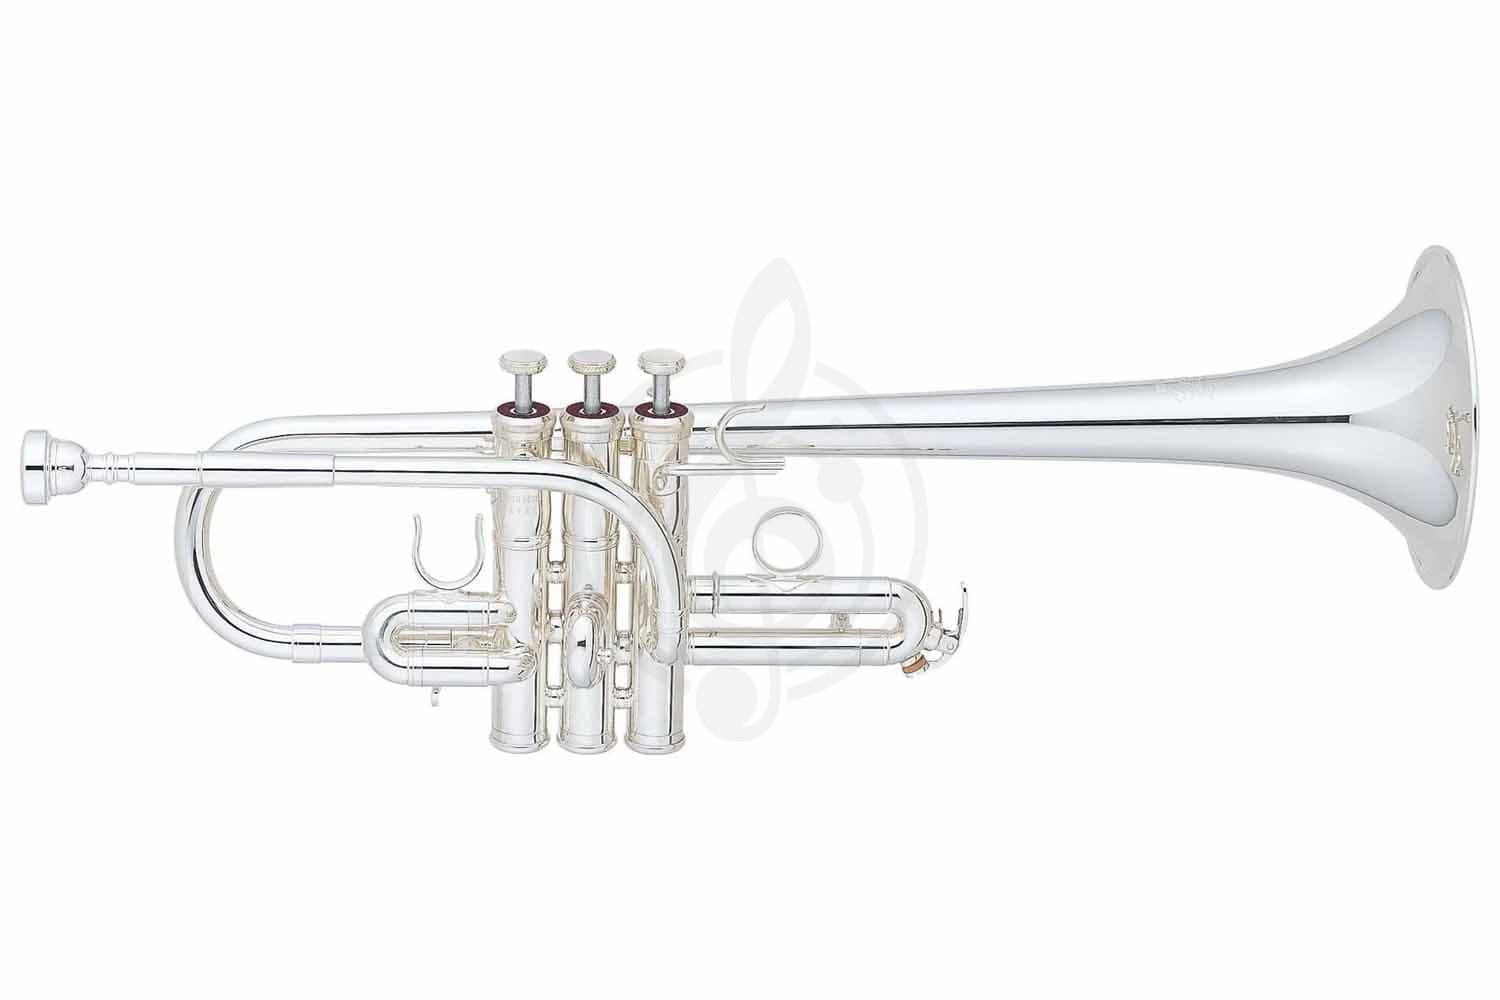 Труба Трубы Yamaha Yamaha YTR-9635 - труба E/ Eb, ручная работа, посеребренная , 2 раструба YTR-9635 - фото 1